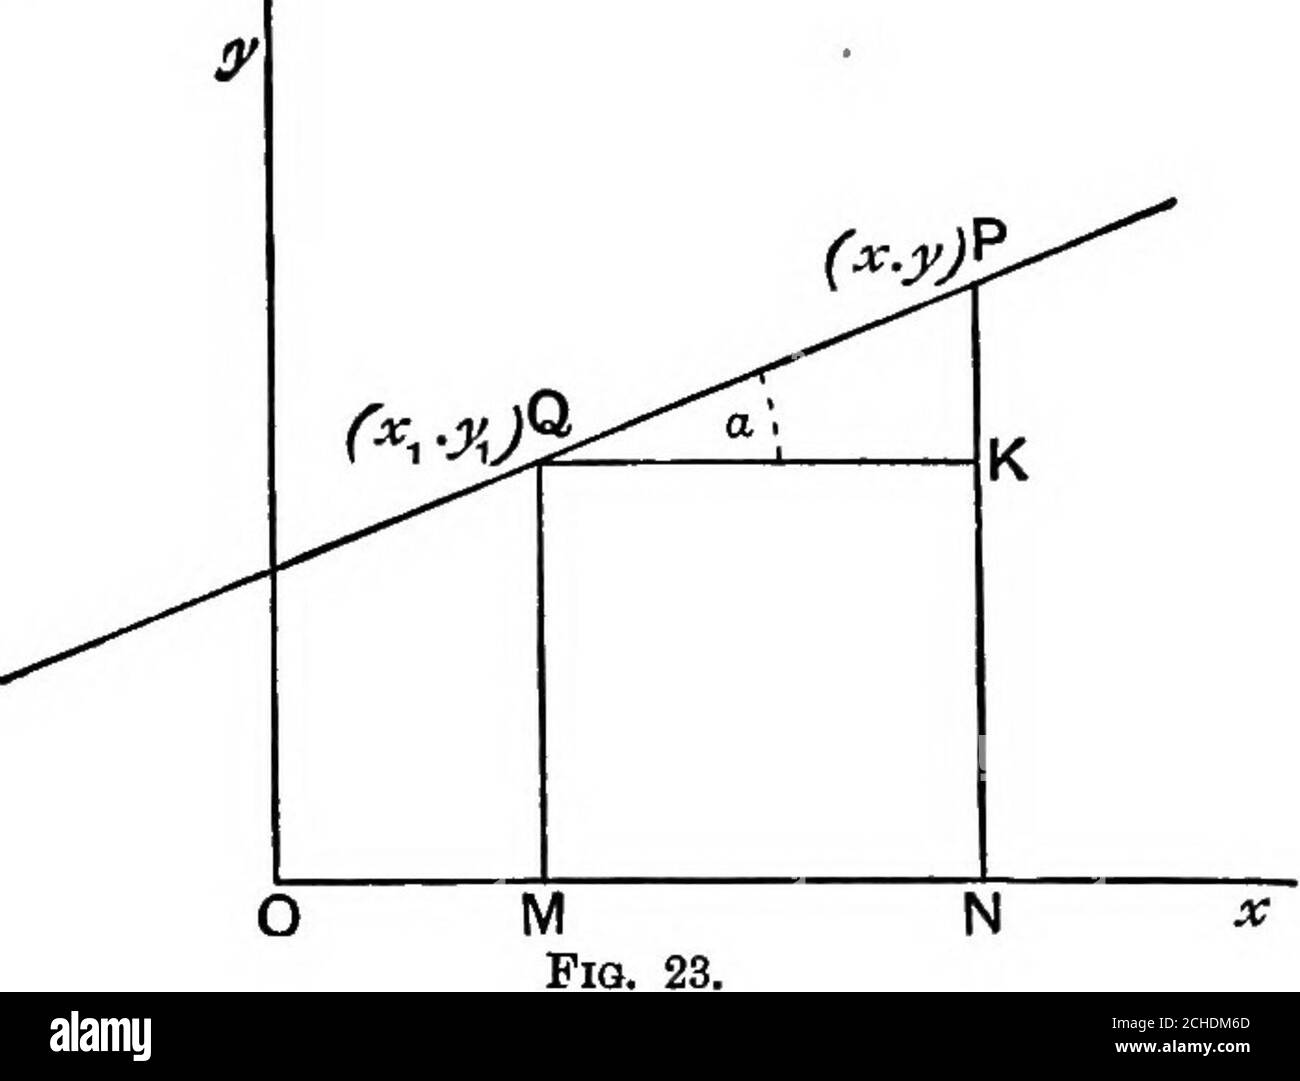 . Geometria algebrica; un nuovo trattato sulle sezioni analitiche coniche . X = a. Se P(a;, y) è un qualsiasi punto sulla linea retta, è necessario definire l'equazione che collega x, y, p e a. Disegnare la PN dell'ordinata. Tracciare inoltre NR perpendicolare a OQ e PM perpendicolare a RN. /LPNivi = 90°-ARNO = a. 20 LA RETTA.= ON cos a + PN sin a, [cap. II. O p = x cos a + ysm a.. X Cos a + y sin a = p è l'equazione richiesta. Si noti con attenzione che se qualsiasi valore di x e y soddisfa l'equazionedi un luogo, il punto (x, y) giace su quel luogo. Anche viceversa, se il punto (x, y) è su un locus, questi valori o Foto Stock